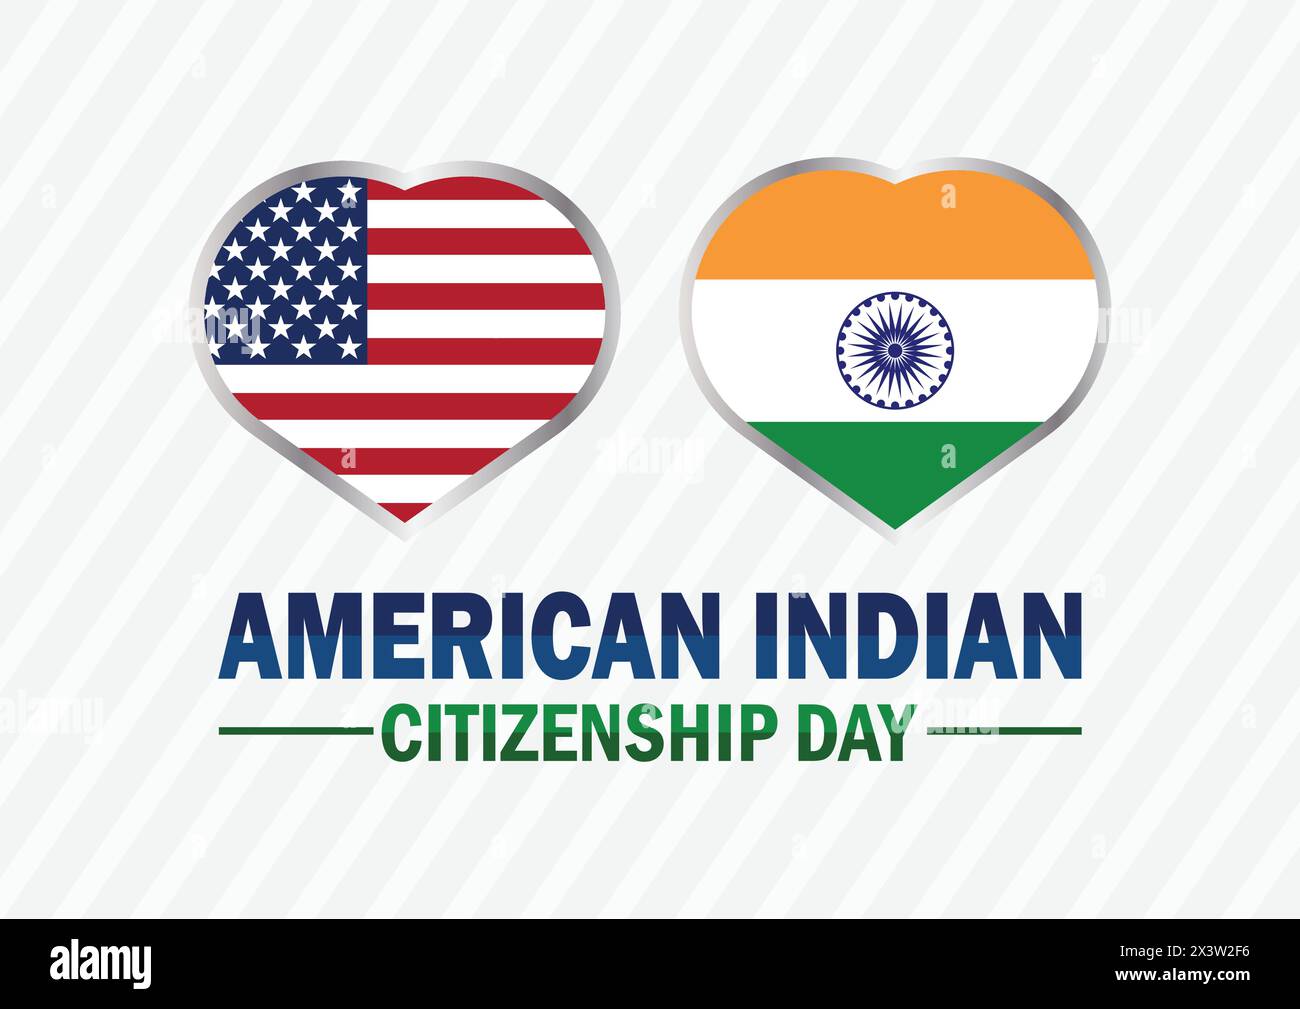 Tag Der Amerikanischen Indianer-Staatsbürgerschaft. Urlaubskonzept. Vorlage für Hintergrund, Banner, Karte, Poster mit Textbeschriftung. Stock Vektor